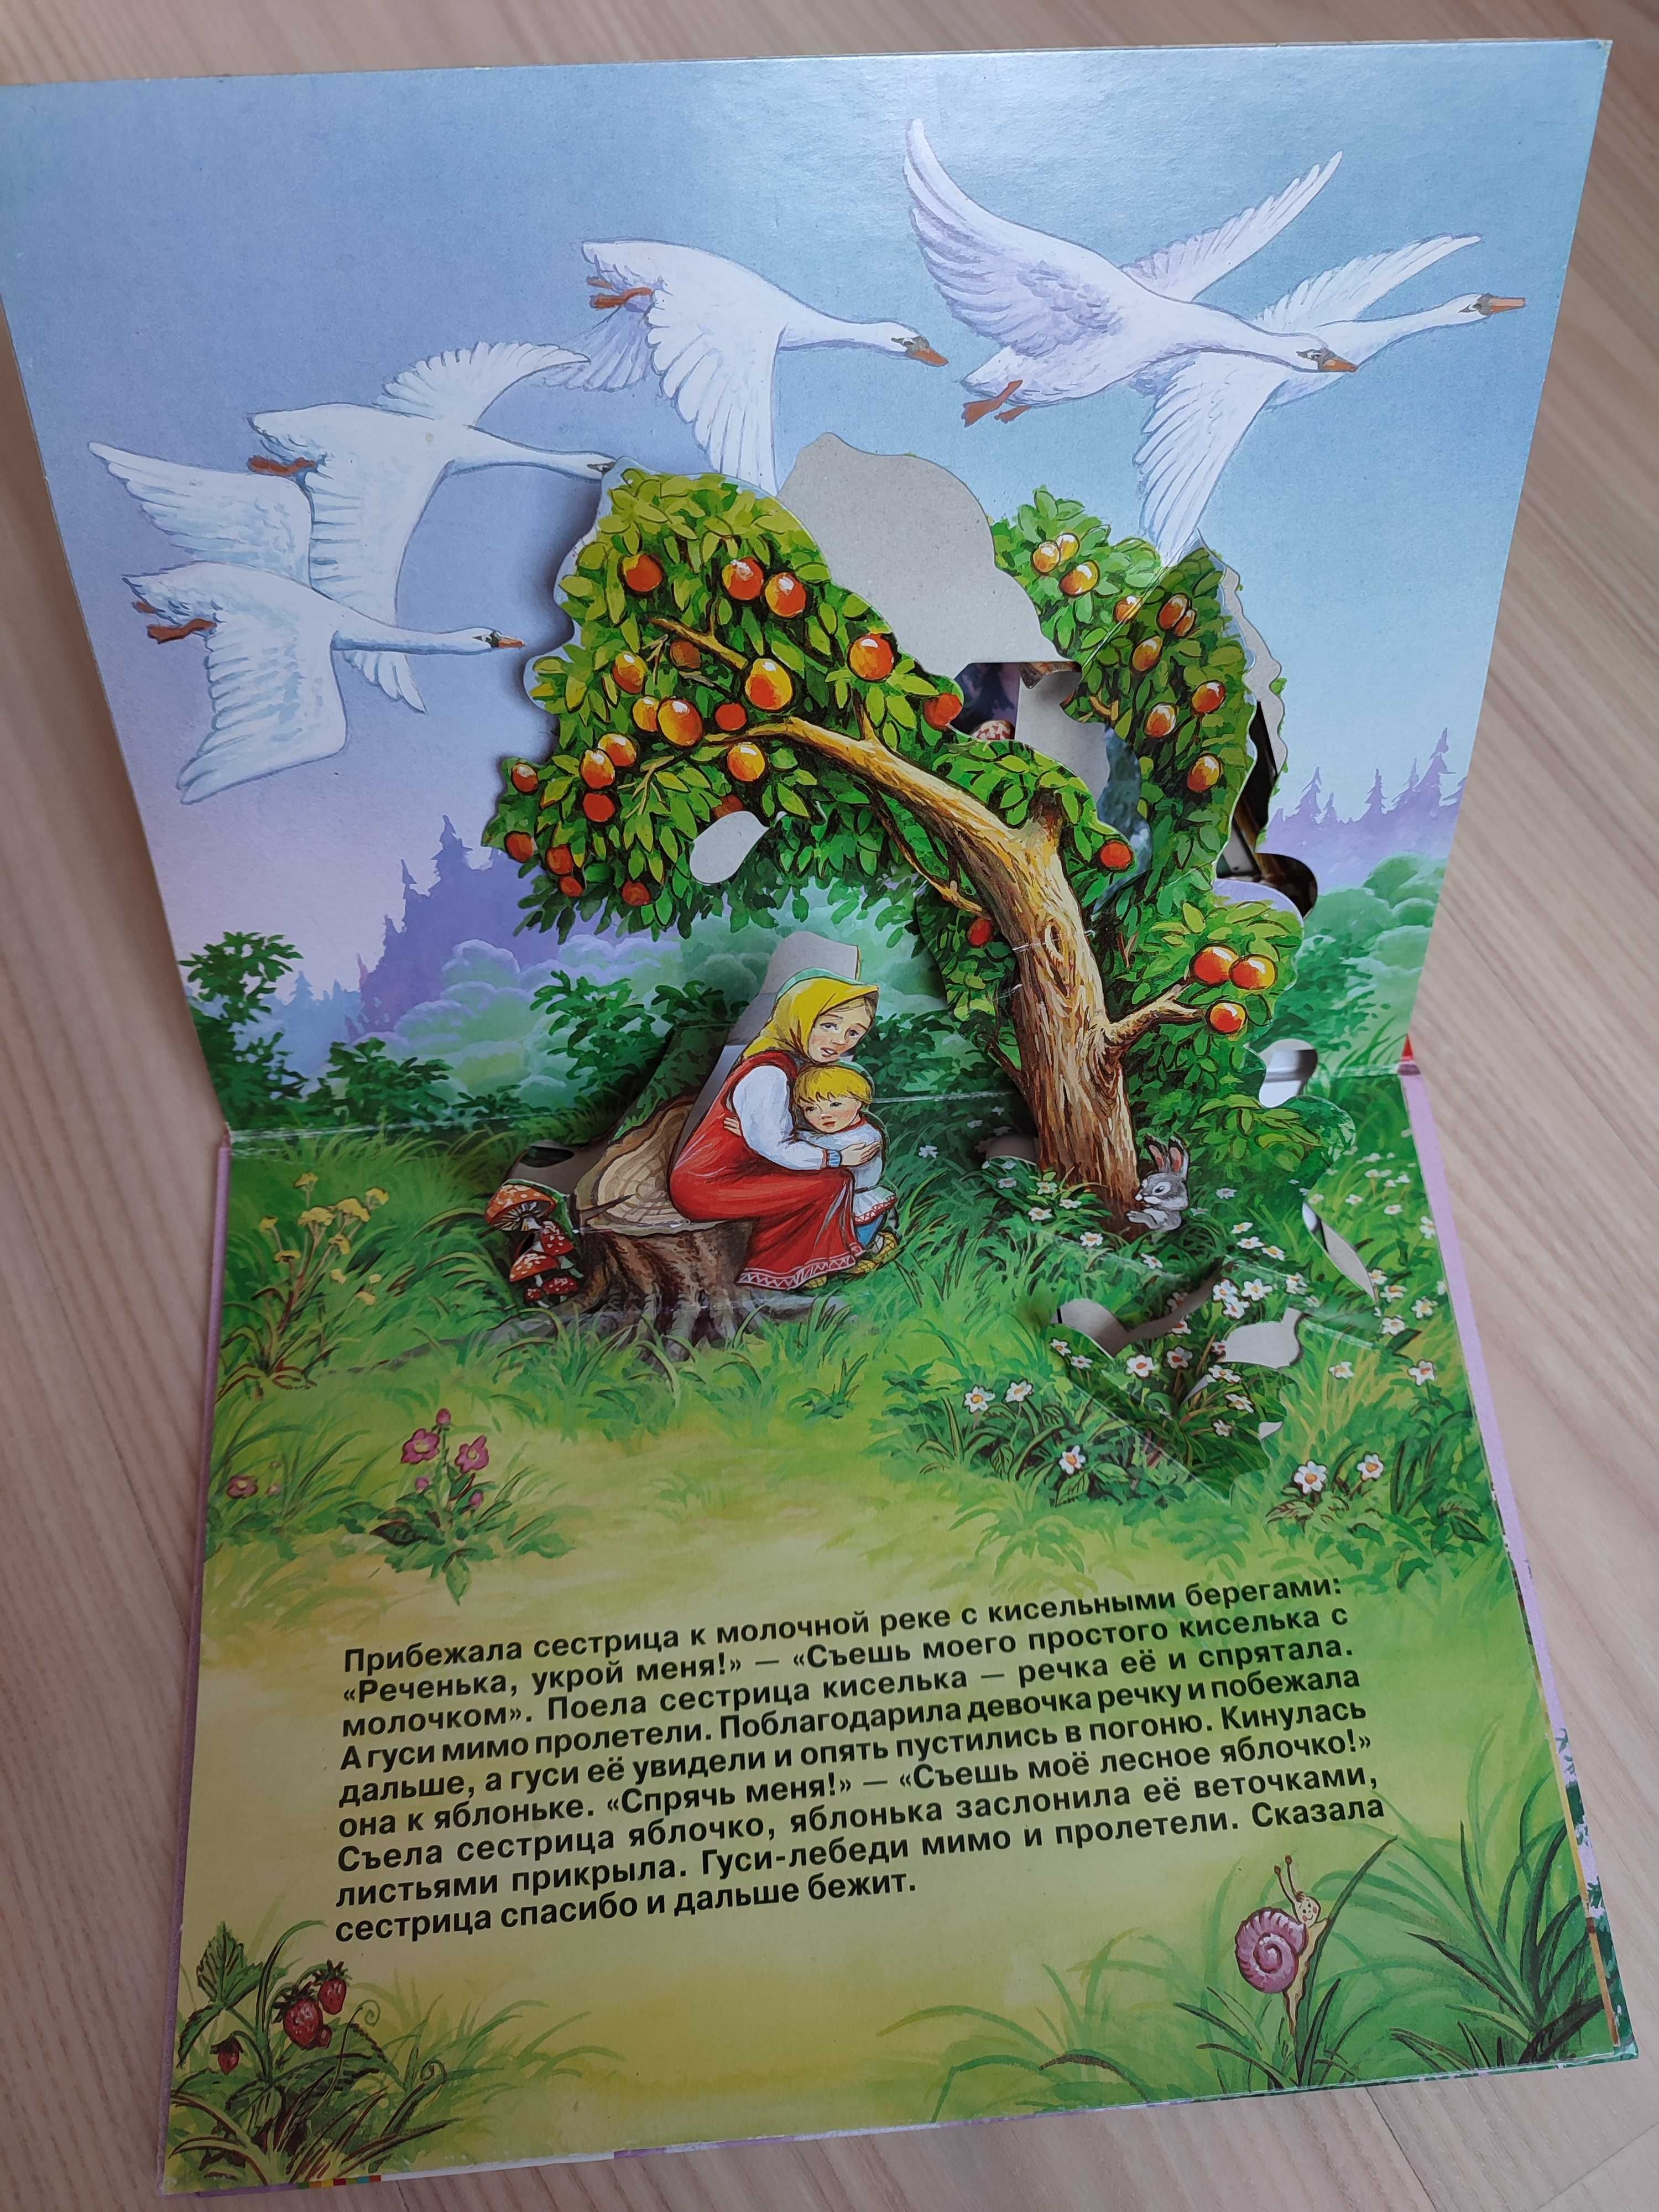 Книга для детей сказка "Гуси -лебеди" (панорамный формат)